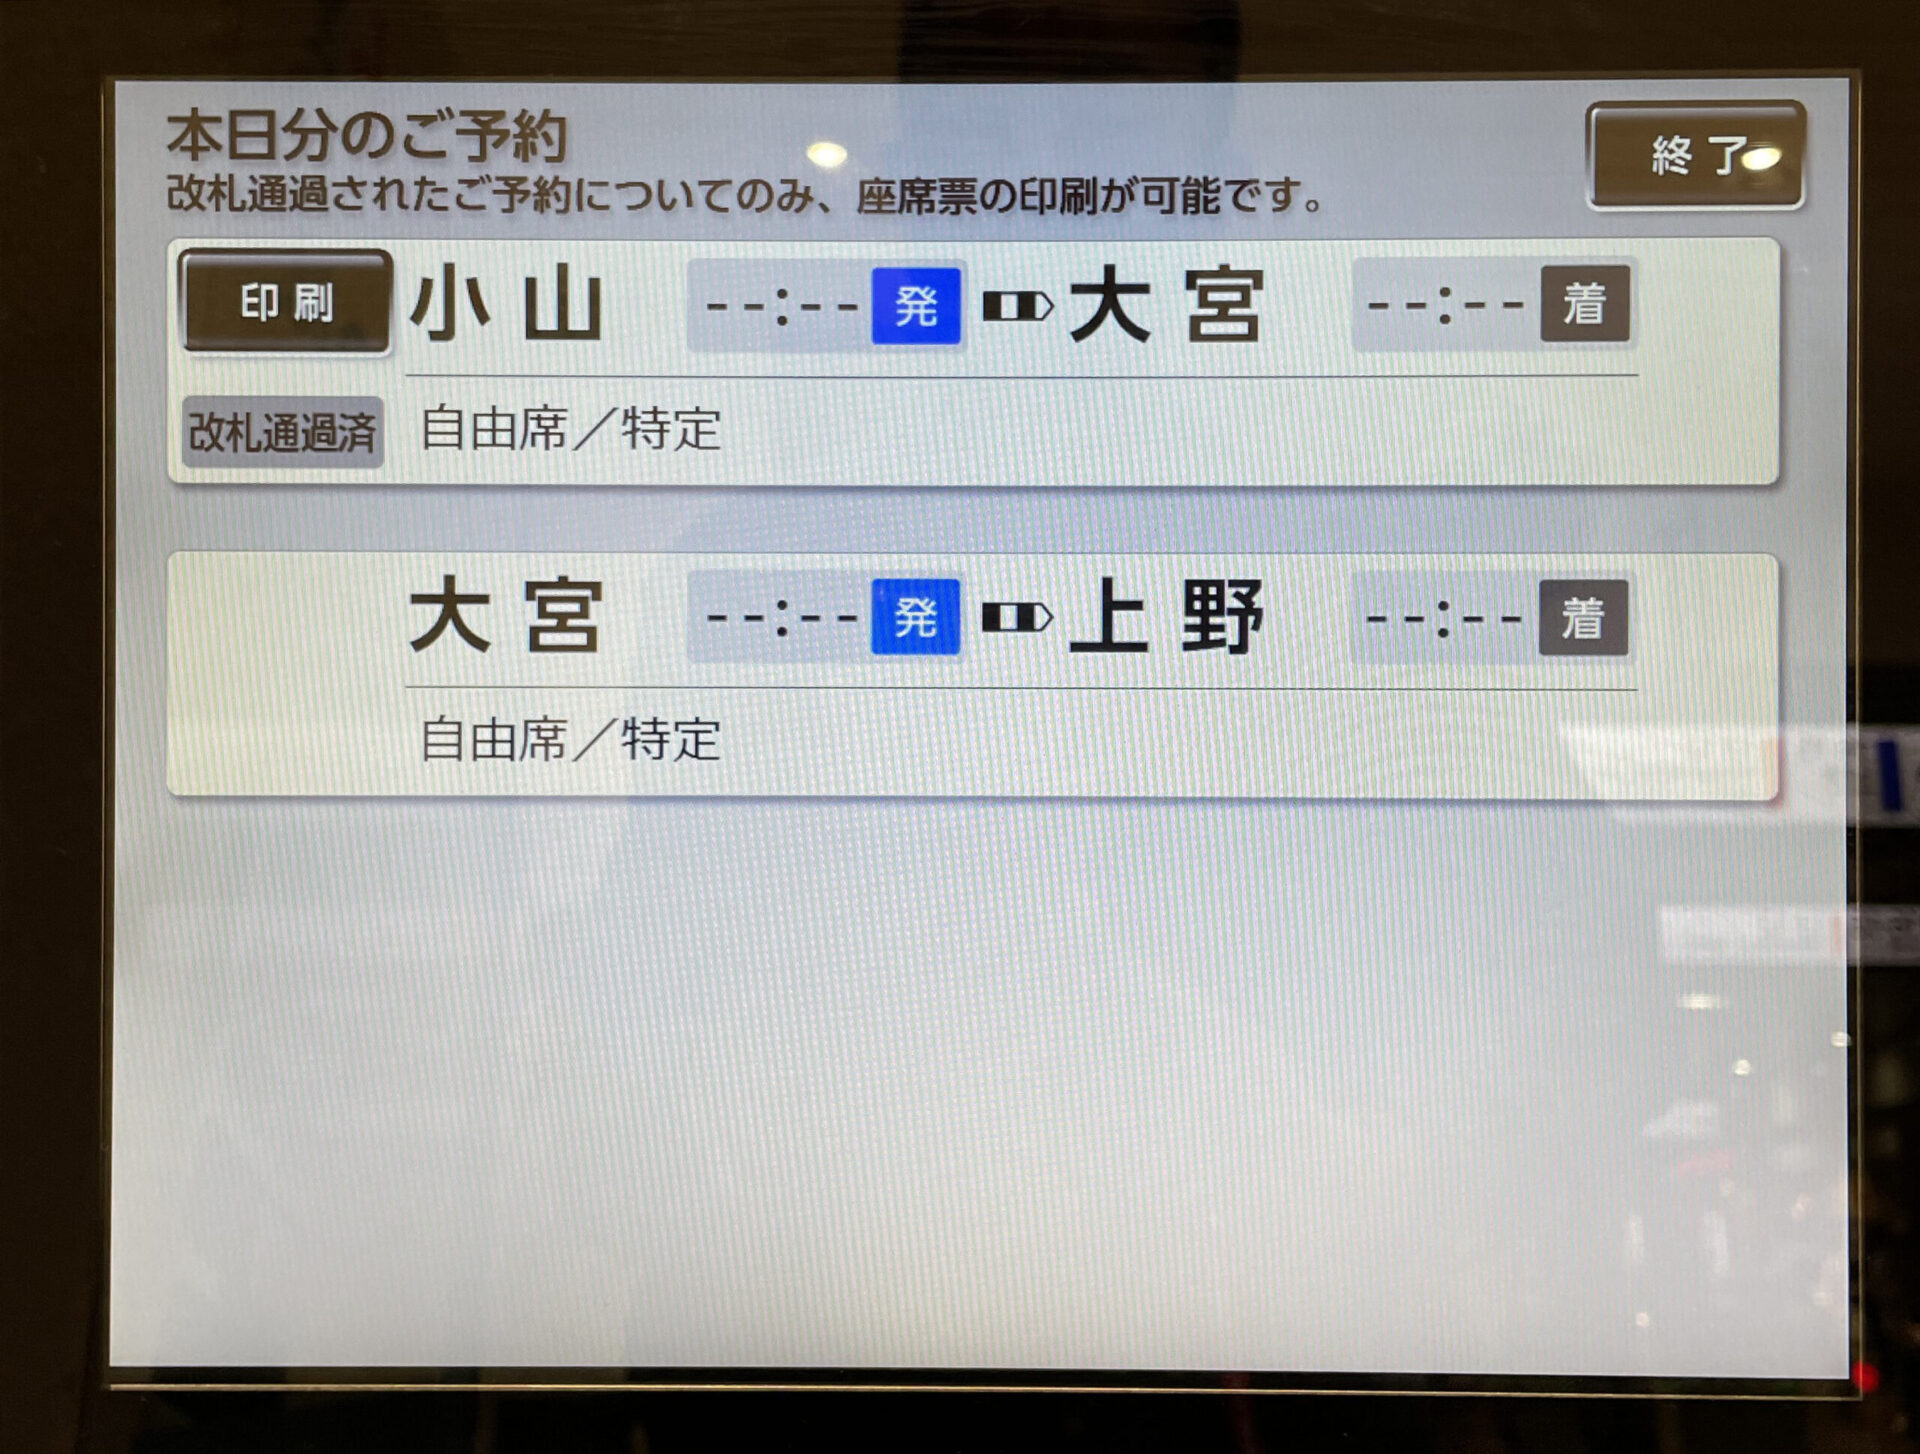 新幹線イーチケット座席票発行機の画面